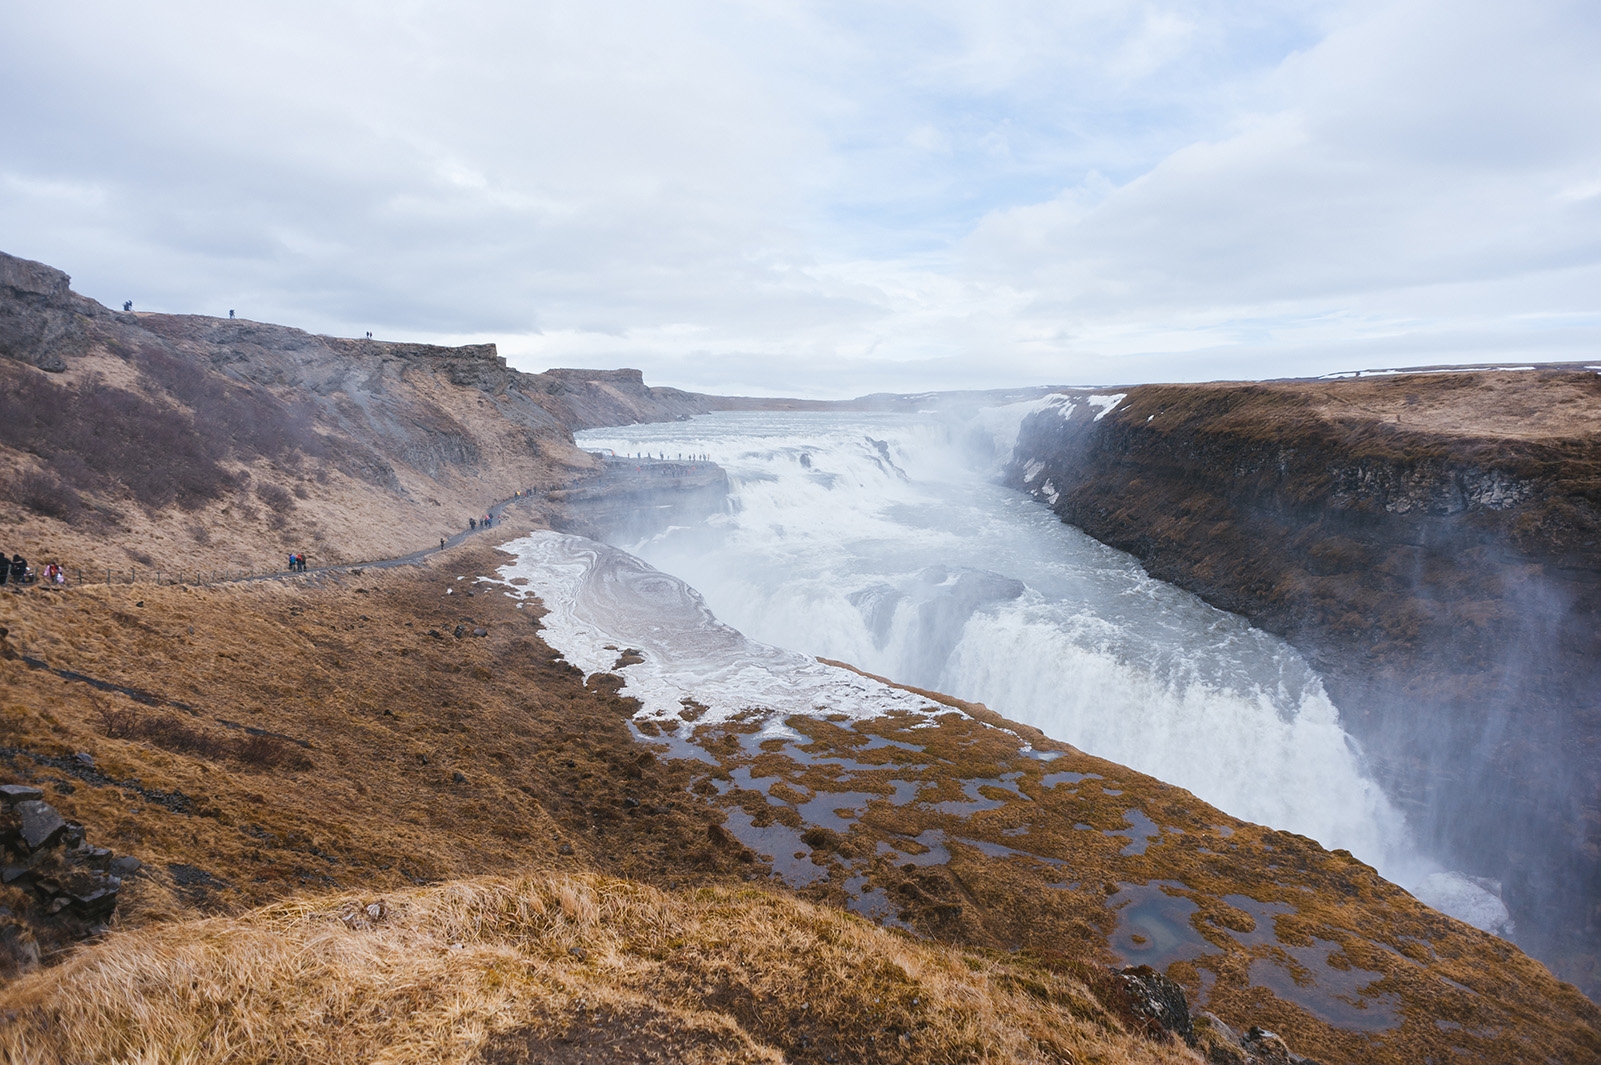 Gullfoss - золотой водопад, один из самых красивых в Исландии. Находится на севере долины Haukadalur.